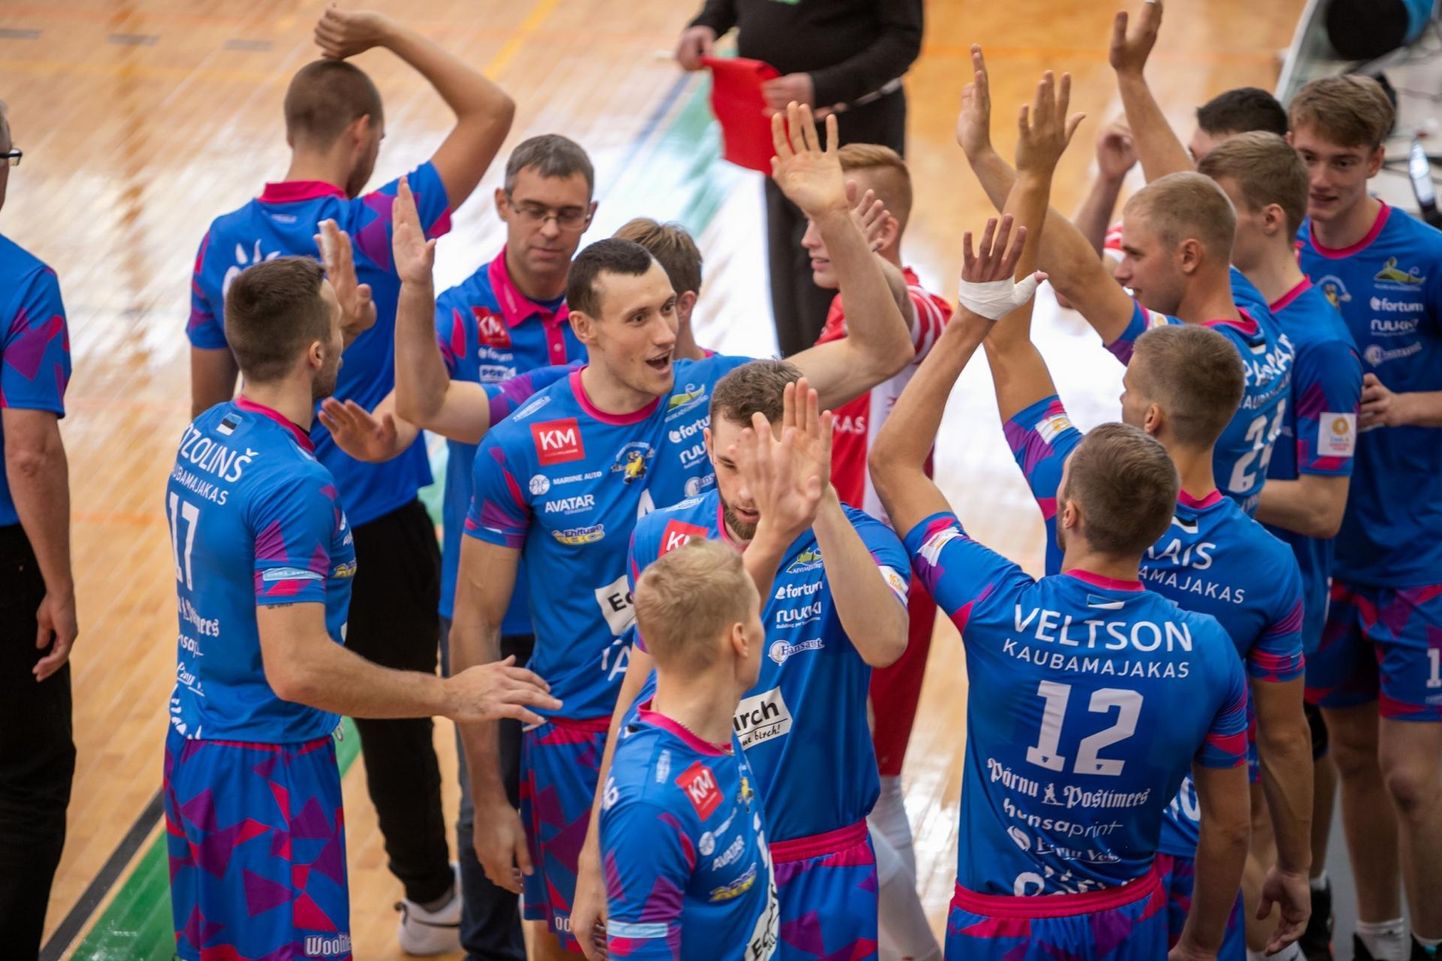 Pärnu võrkpalliklubi võitis kodusaalis Klaipeda Amber-Arlangat 3:0.